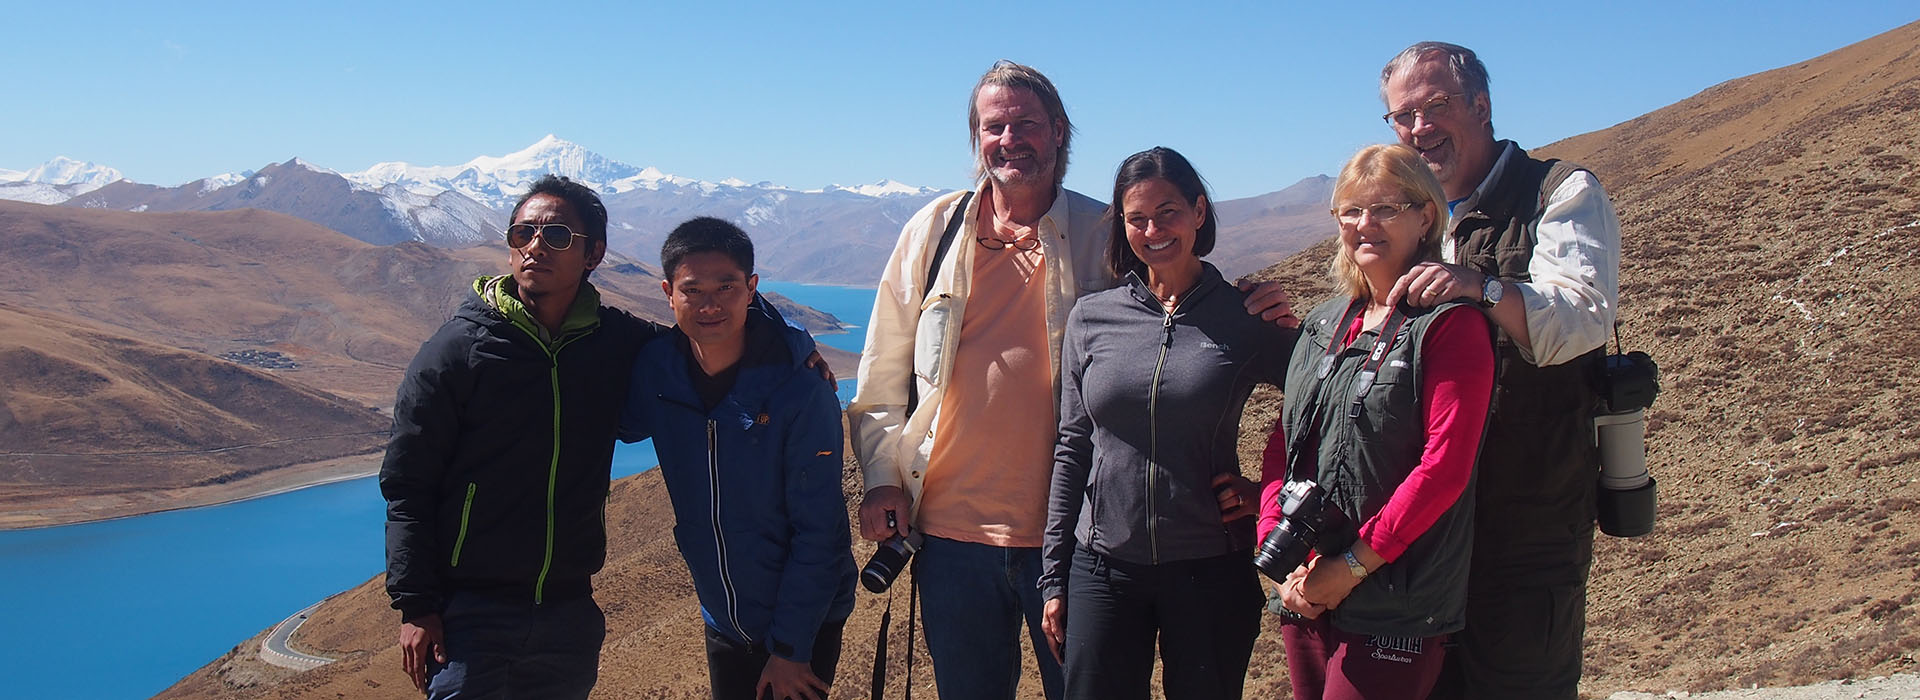 viaggi in tibet tour operator